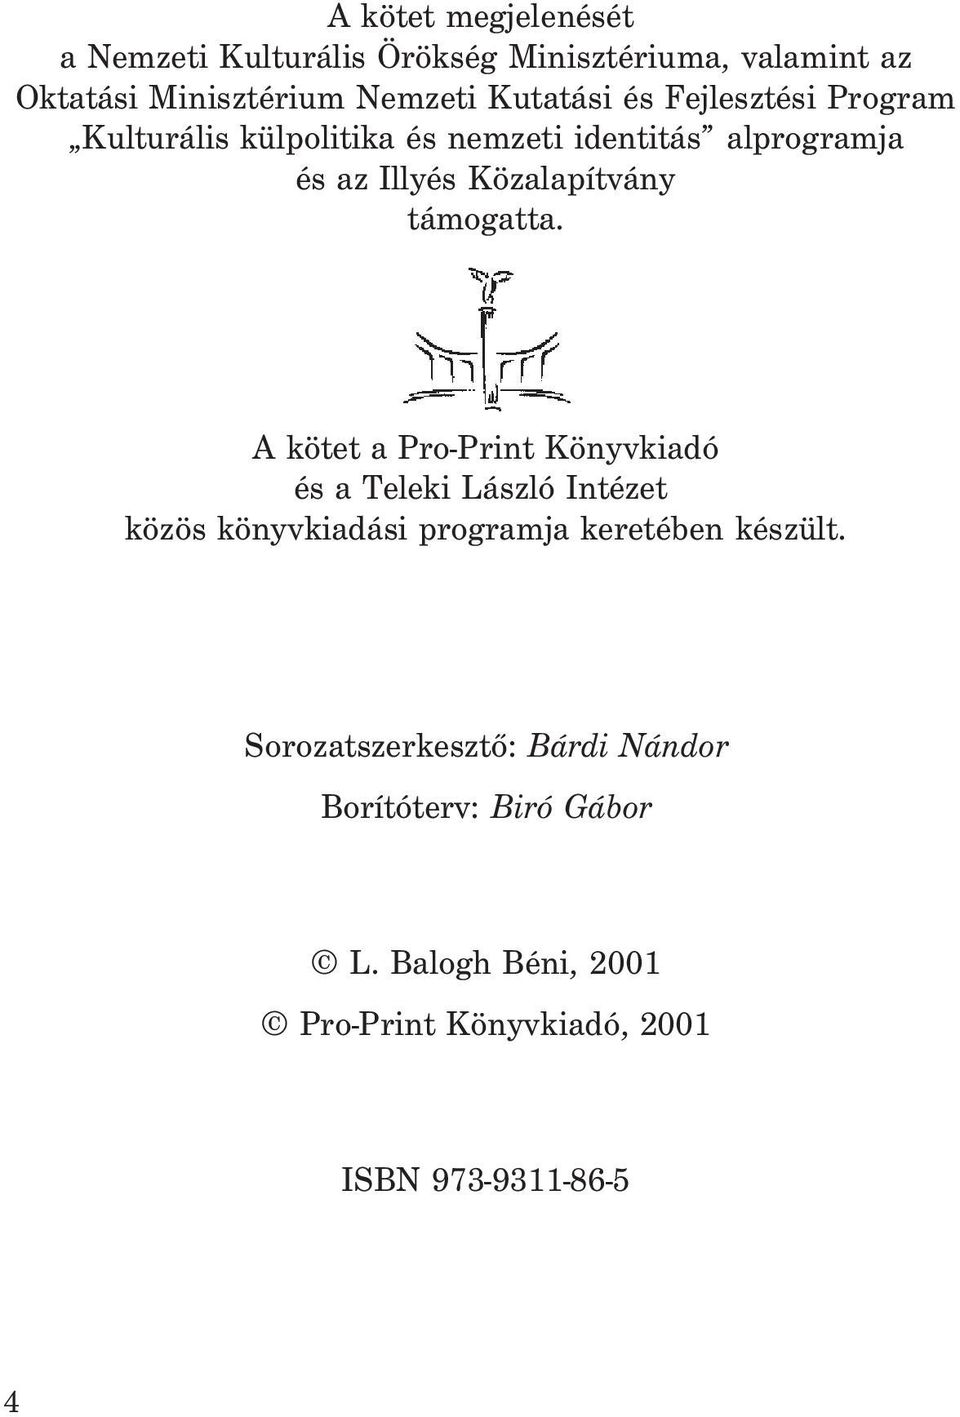 A kötet a Pro-Print Könyvkiadó és a Teleki László Intézet közös könyvkiadási programja keretében készült.